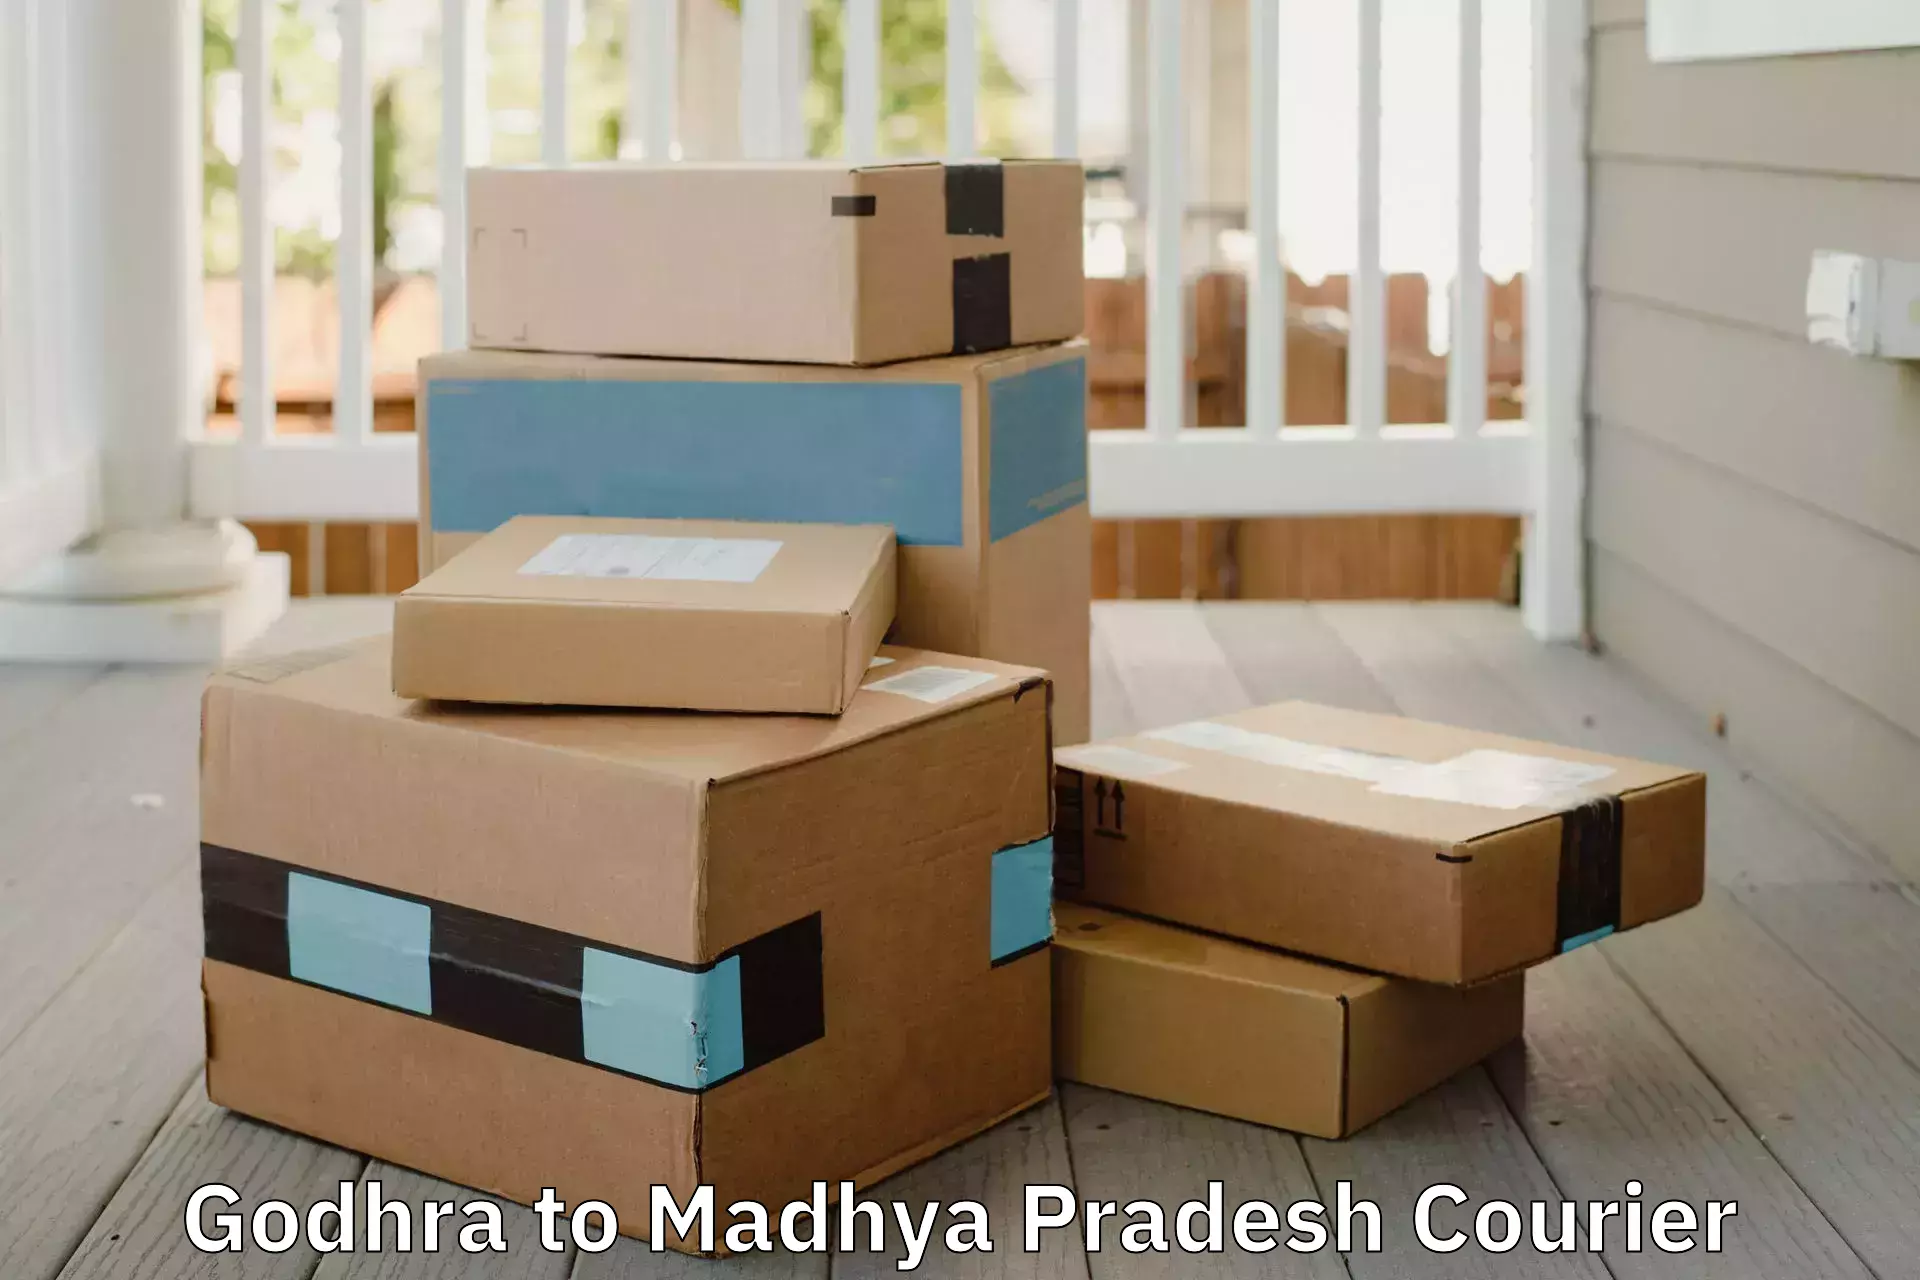 Furniture delivery service Godhra to Jhabua